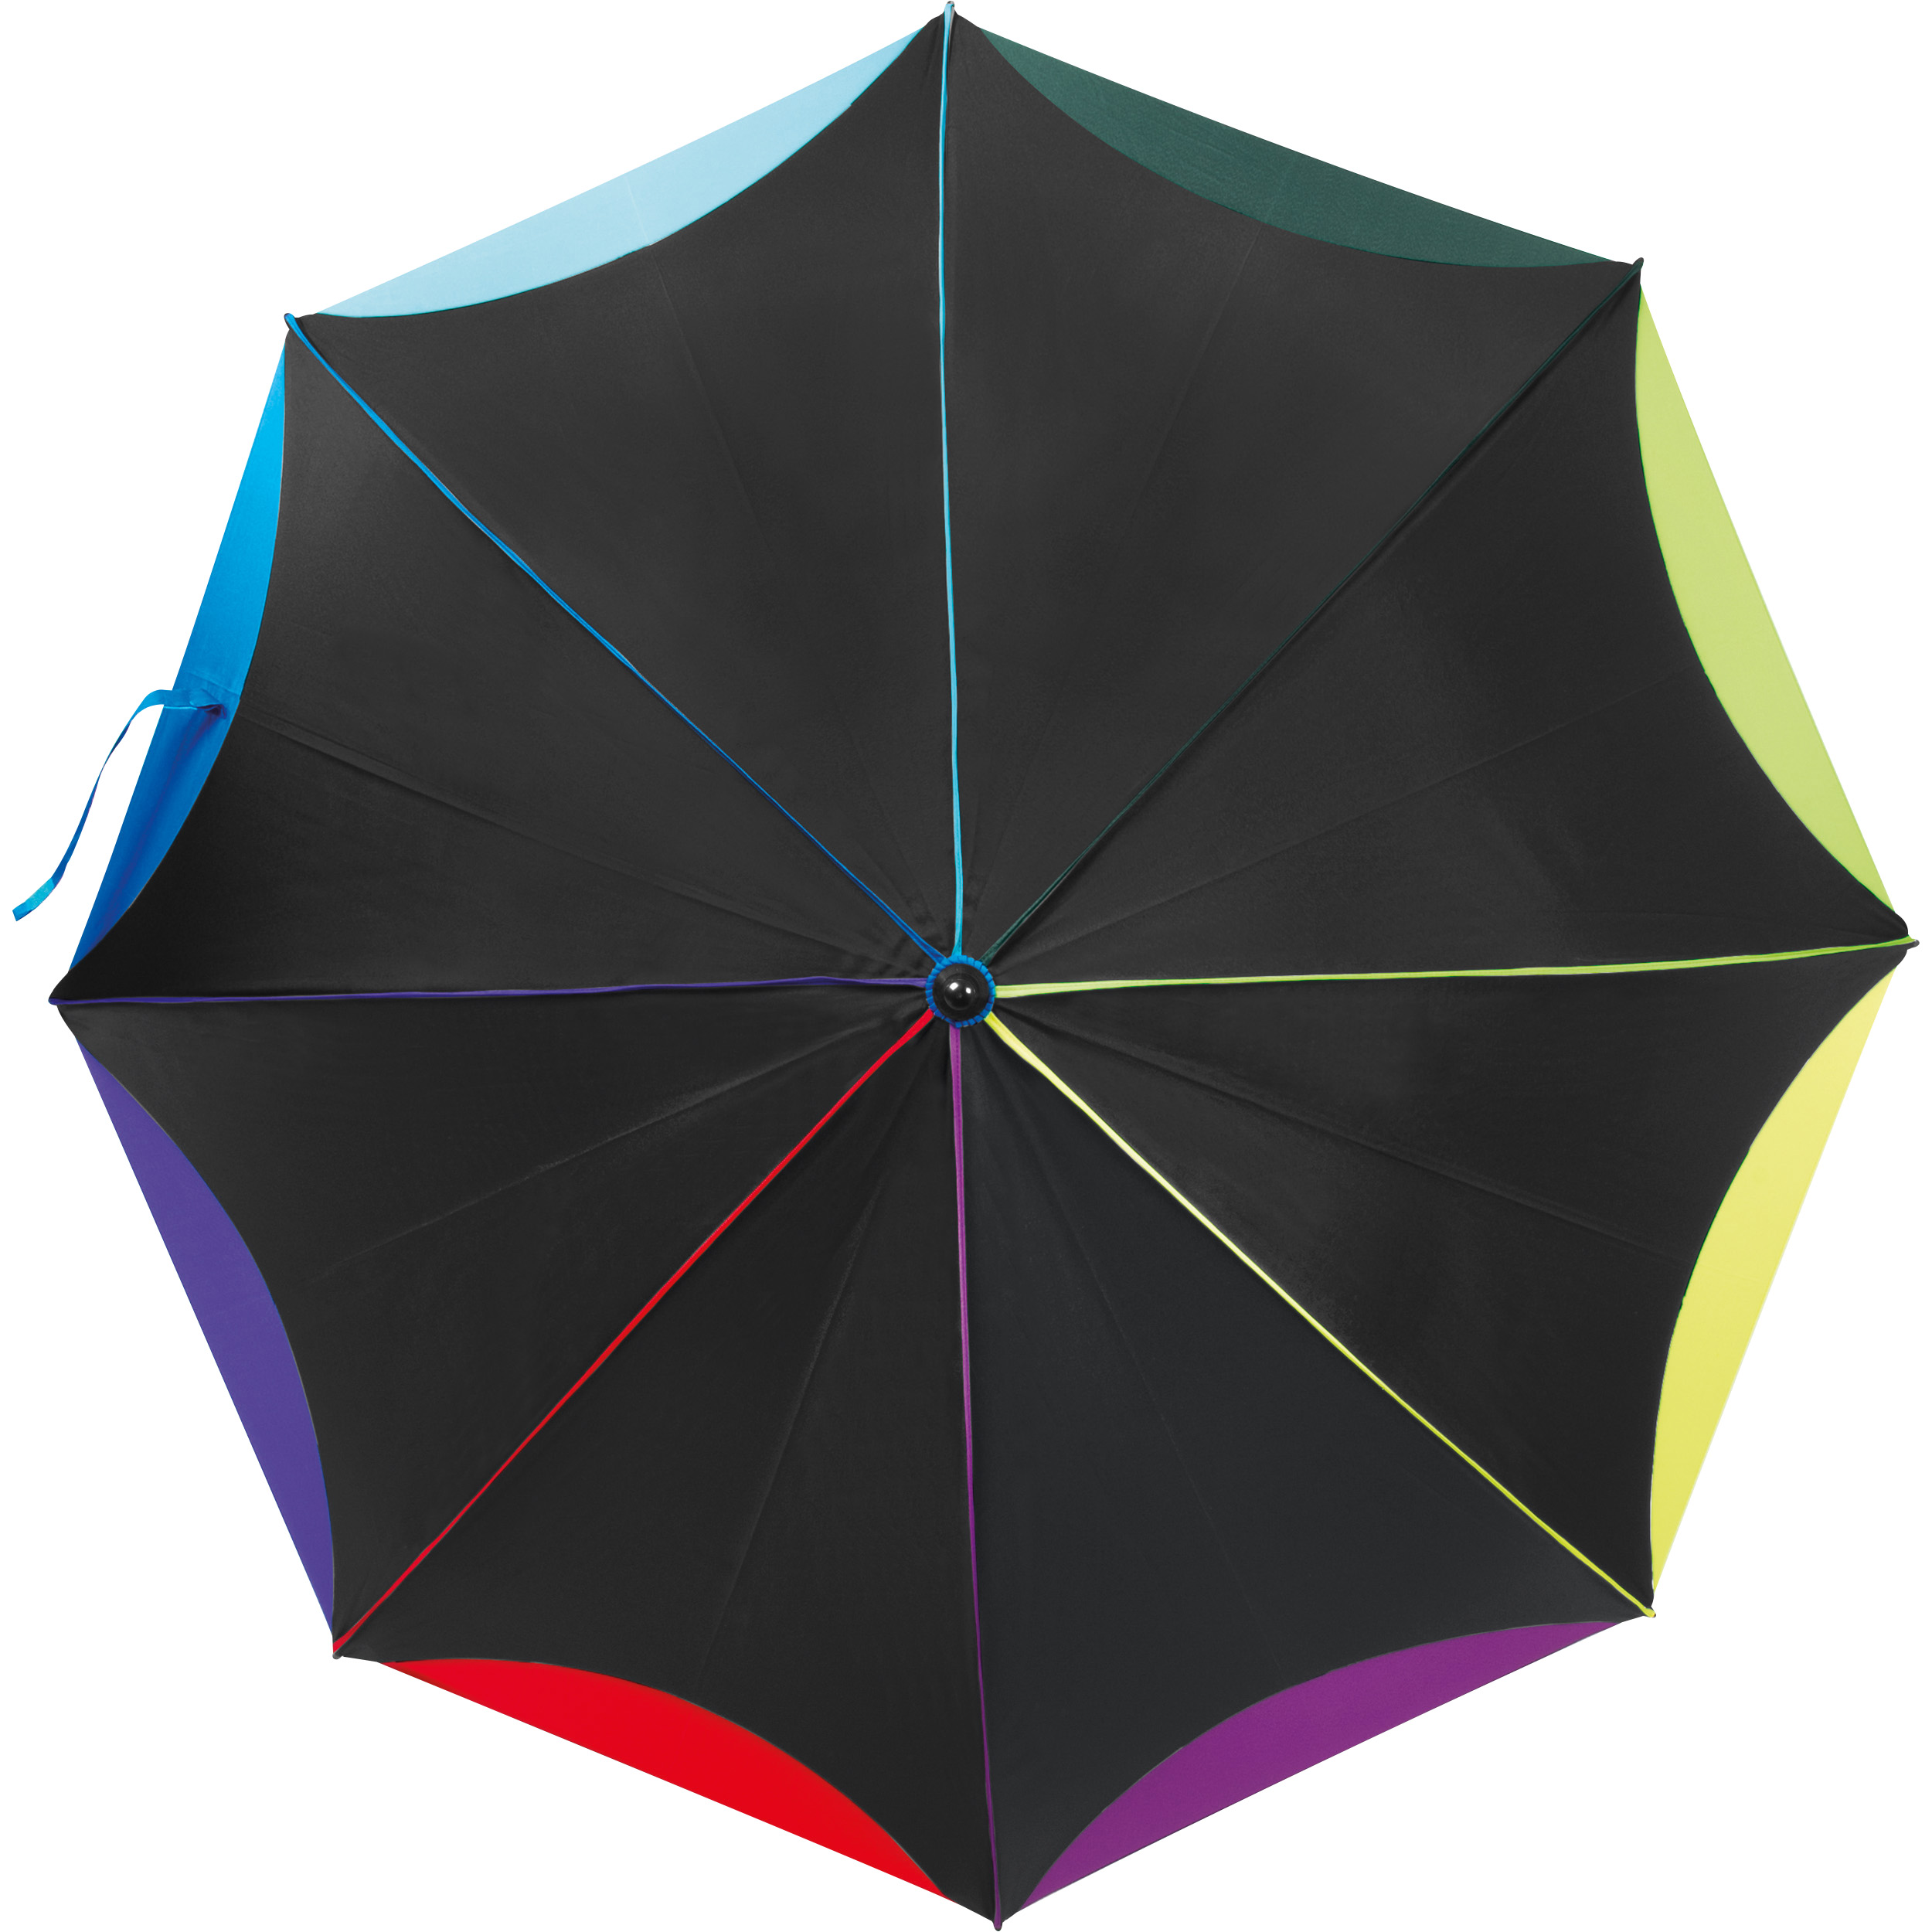 Automatik Regenschirm in Regenbogefarben